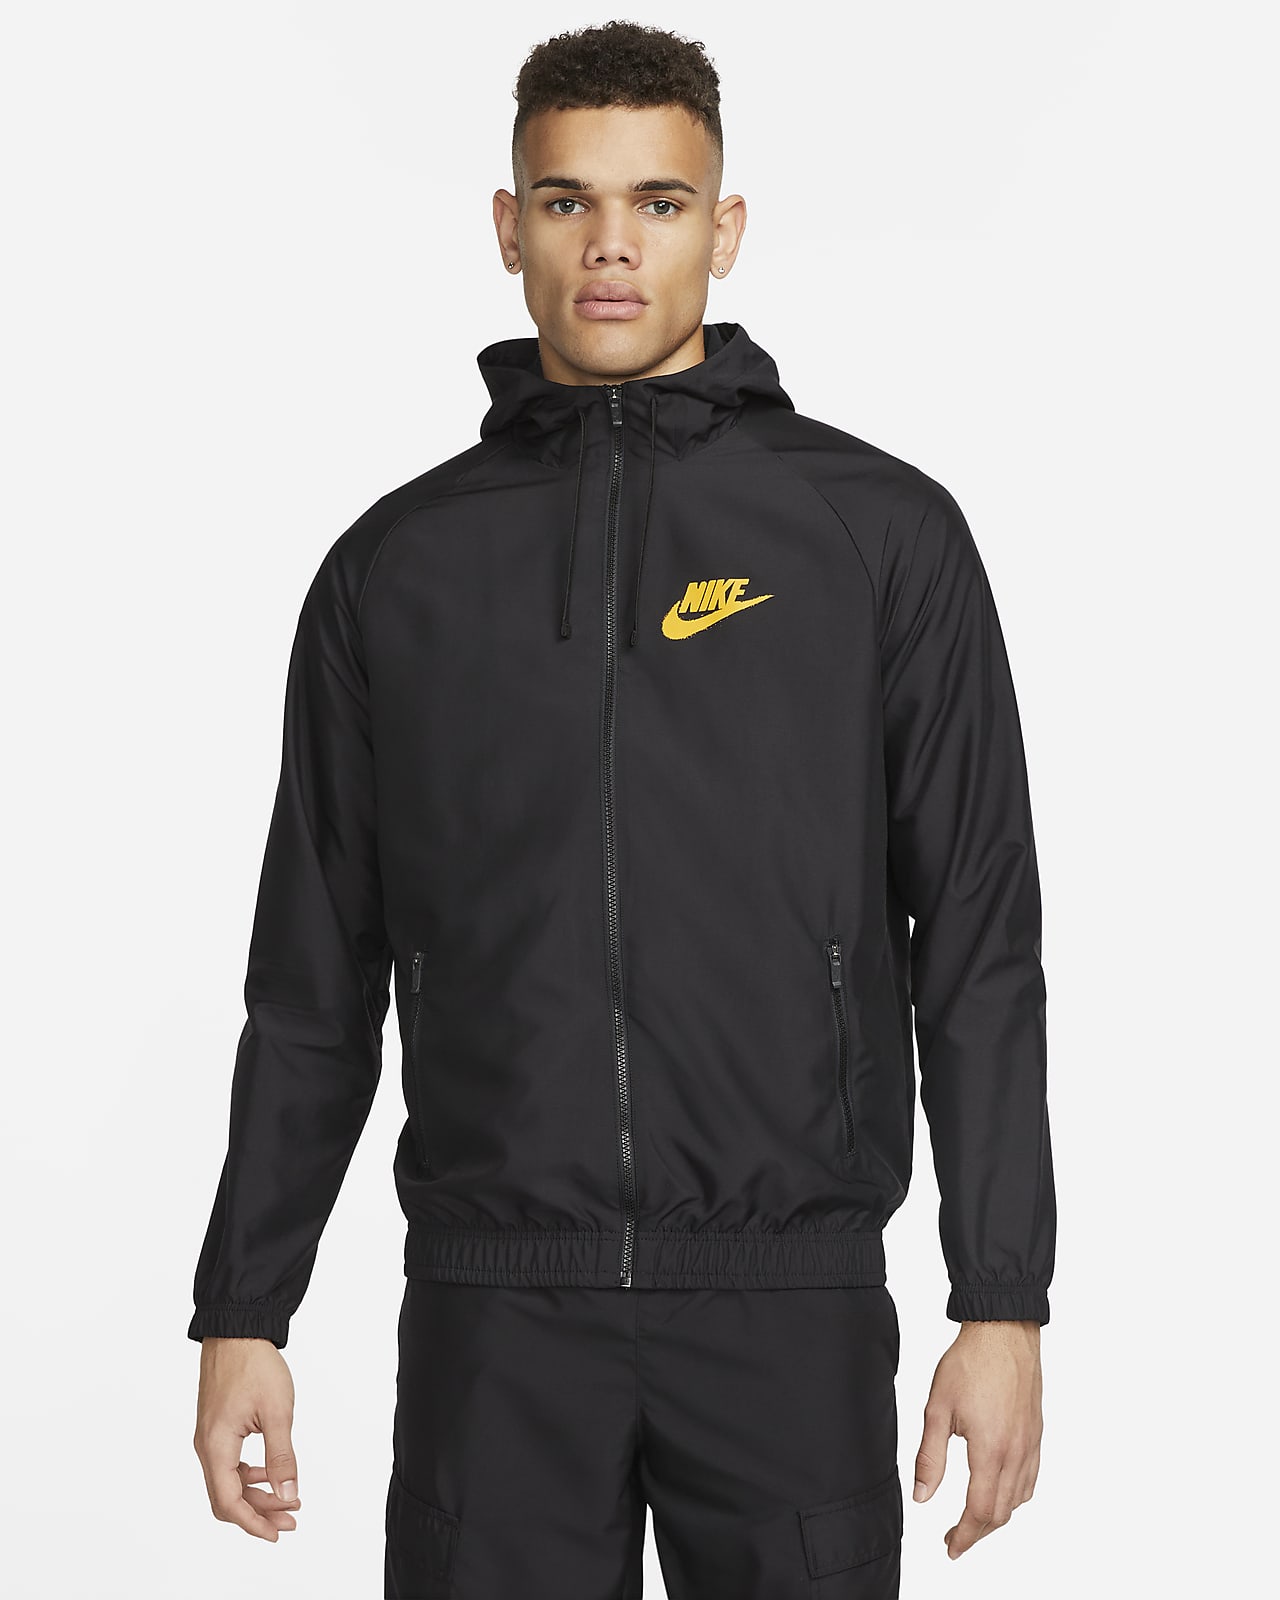 Nike Men's Lightweight Woven Jacket. Nike